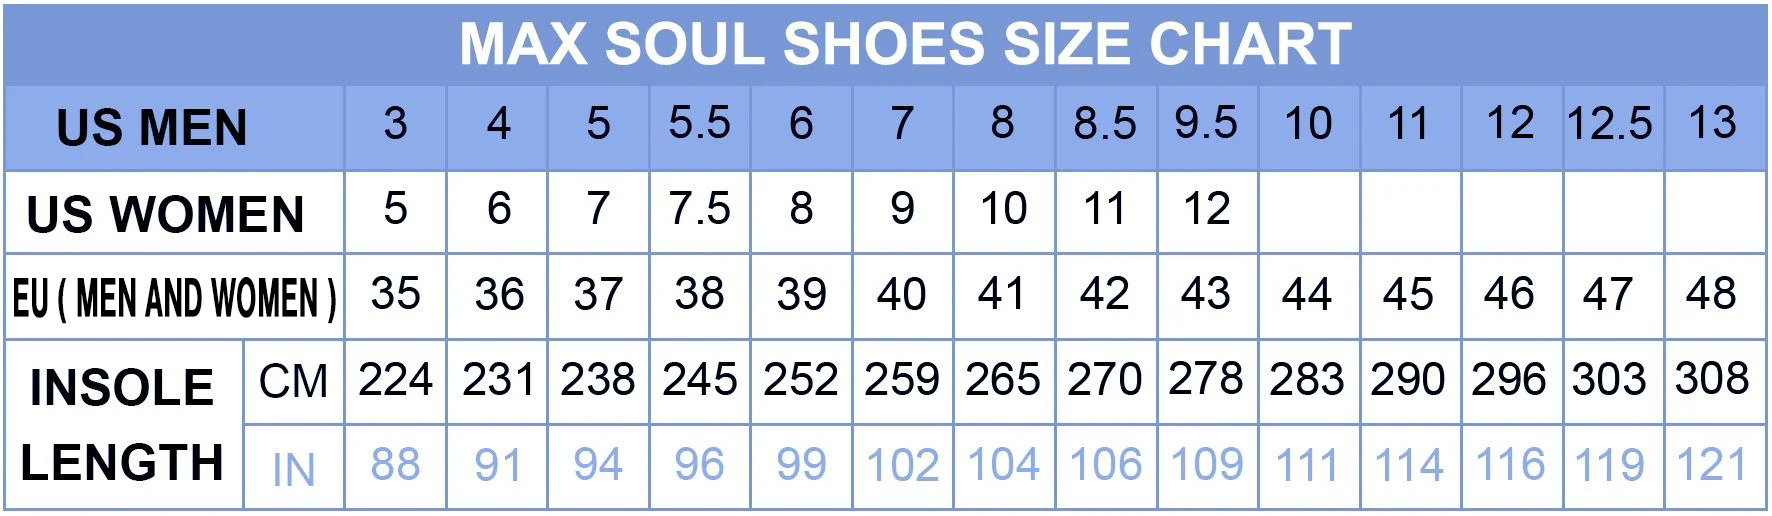 7-Eleven Max soul Shoes 9